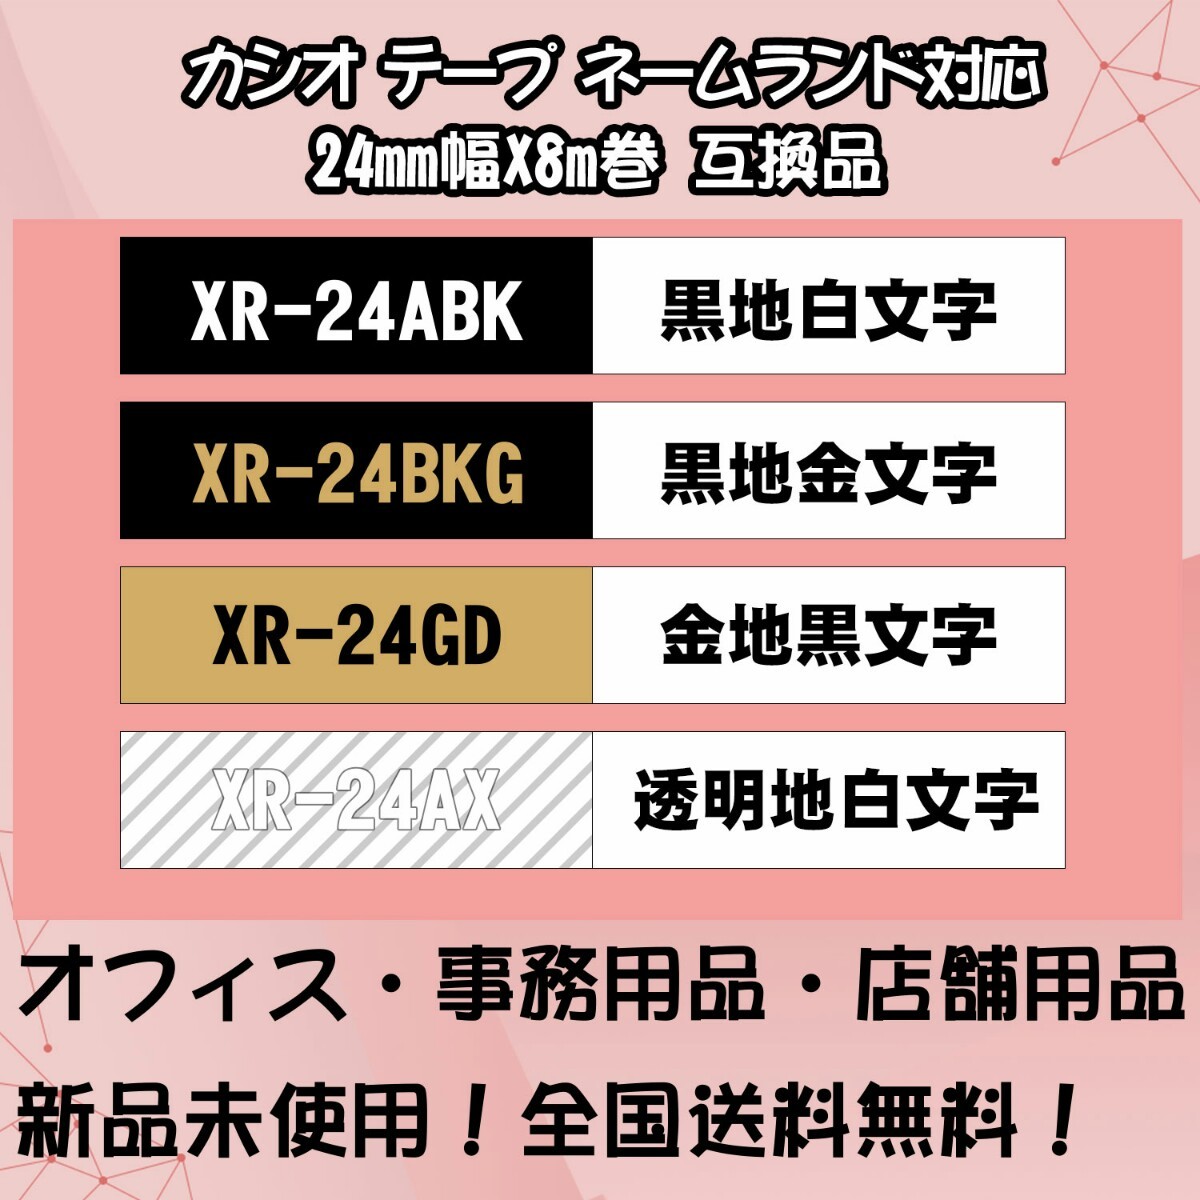 カシオ 24mm幅X8m巻 ・10色選択可 ネームランド 互換テープ 4個